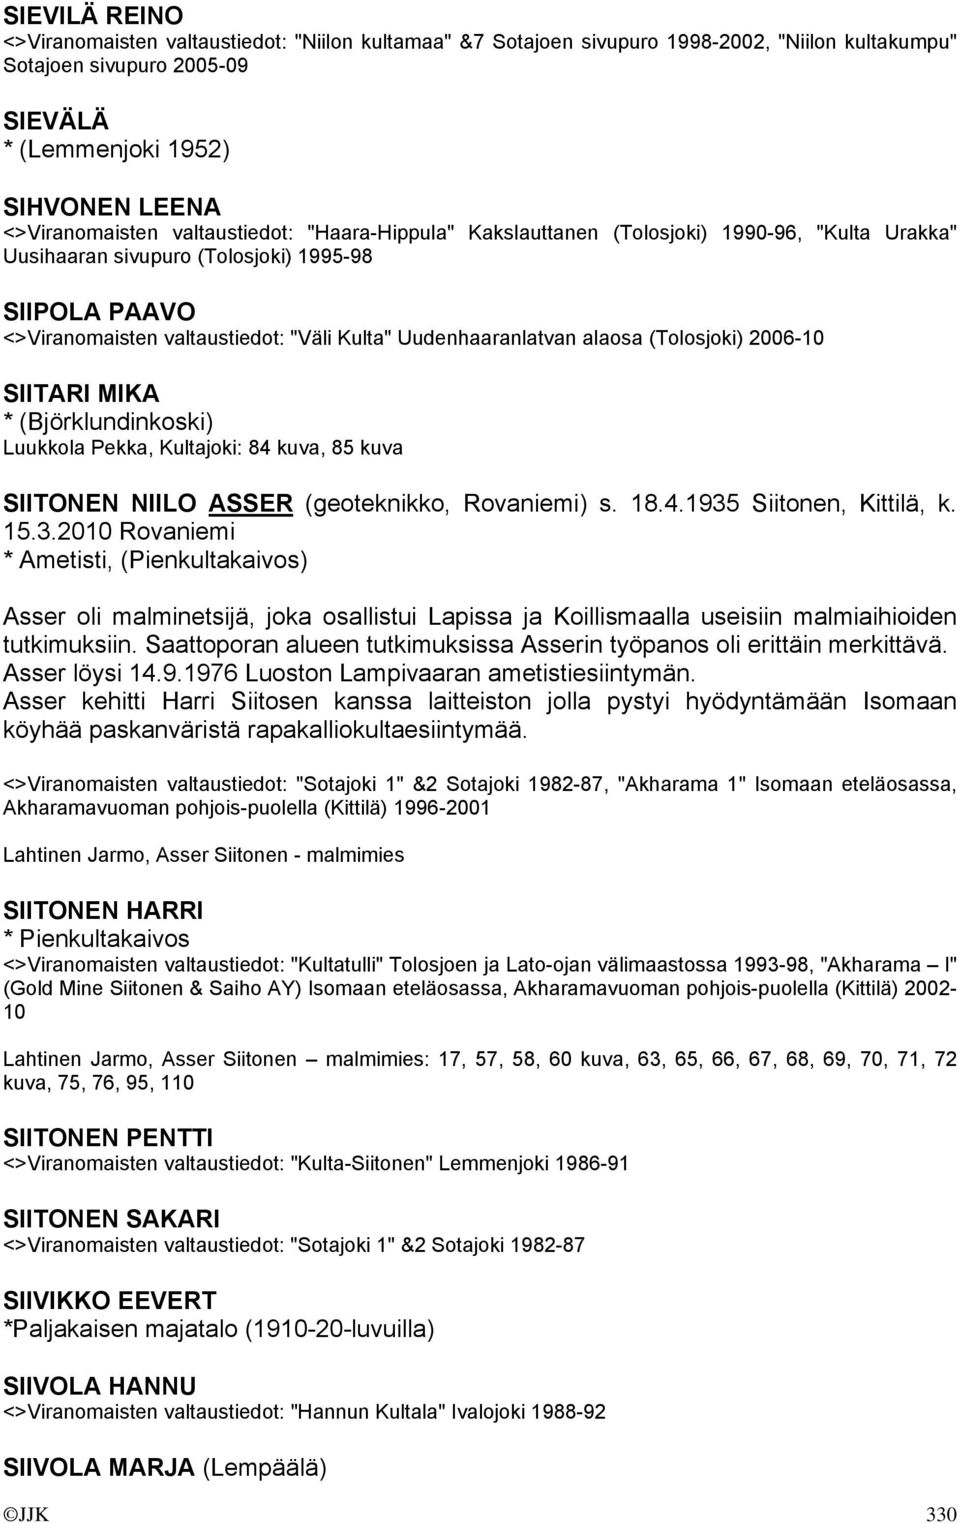 alaosa (Tolosjoki) 2006-10 SIITARI MIKA * (Björklundinkoski) Luukkola Pekka, Kultajoki: 84 kuva, 85 kuva SIITONEN NIILO ASSER (geoteknikko, Rovaniemi) s. 18.4.1935